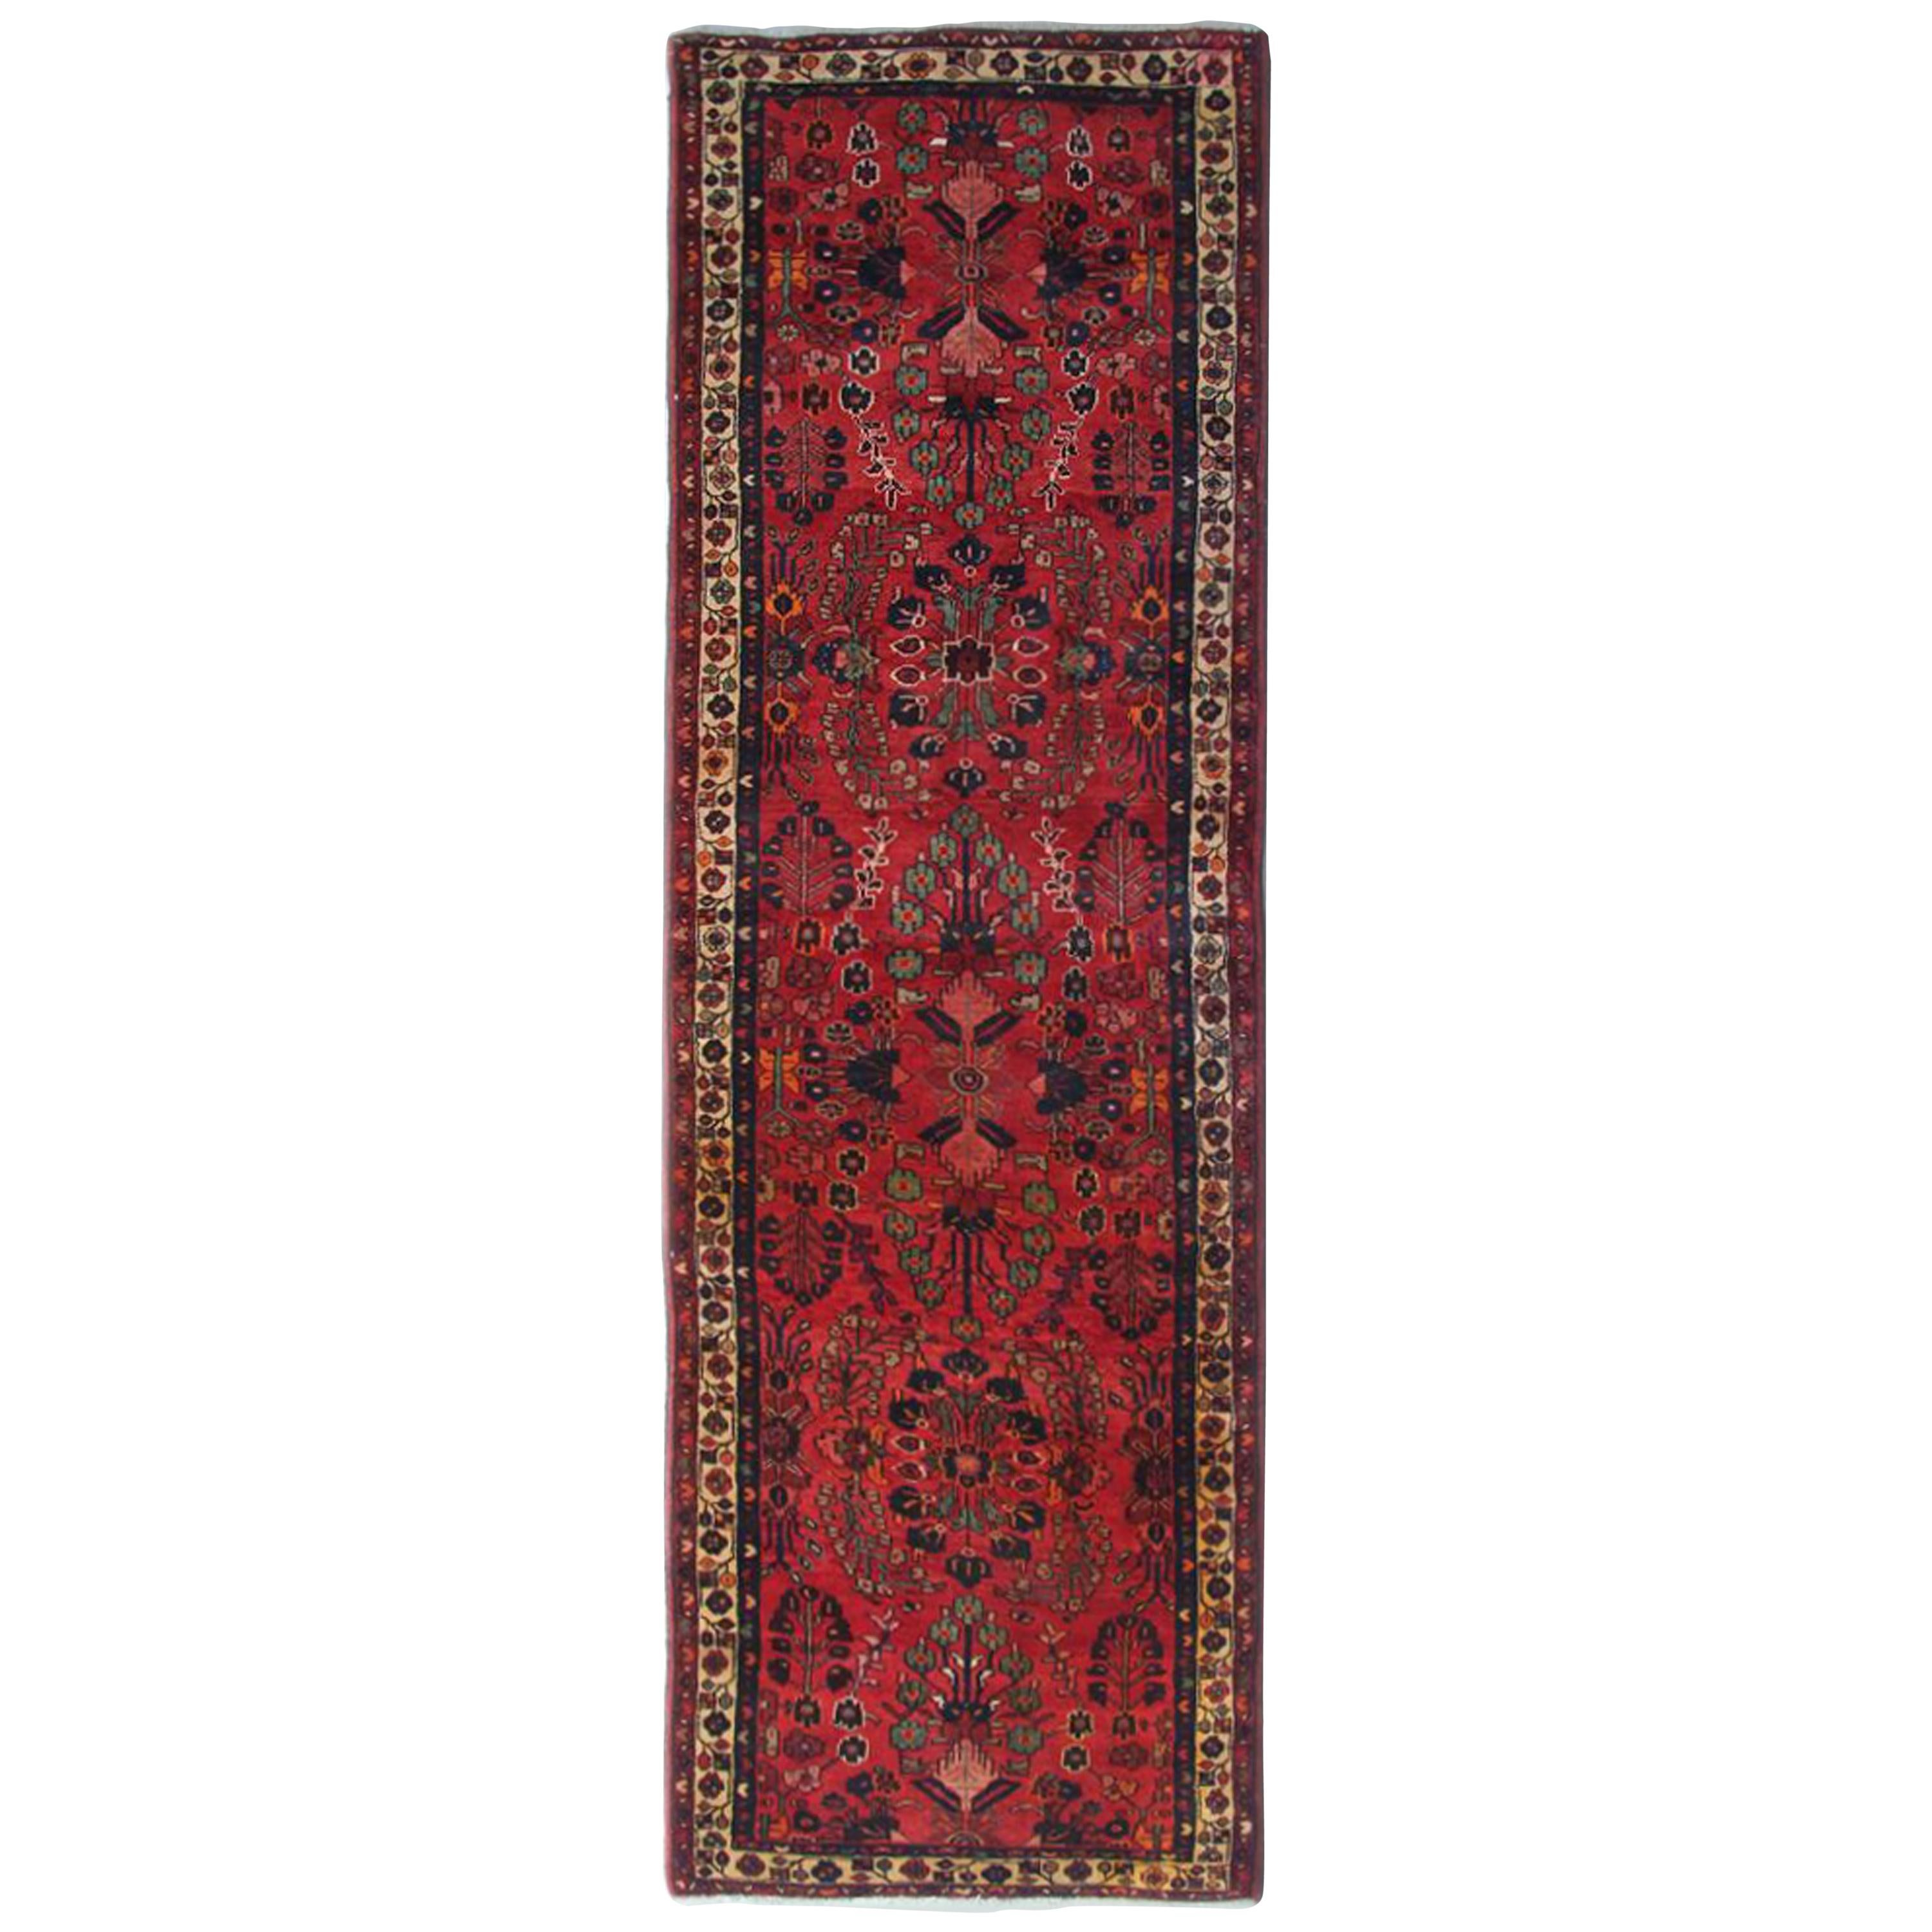 Handwoven Oriental Runner Rug, Traditional Red Wool Vintage Rug